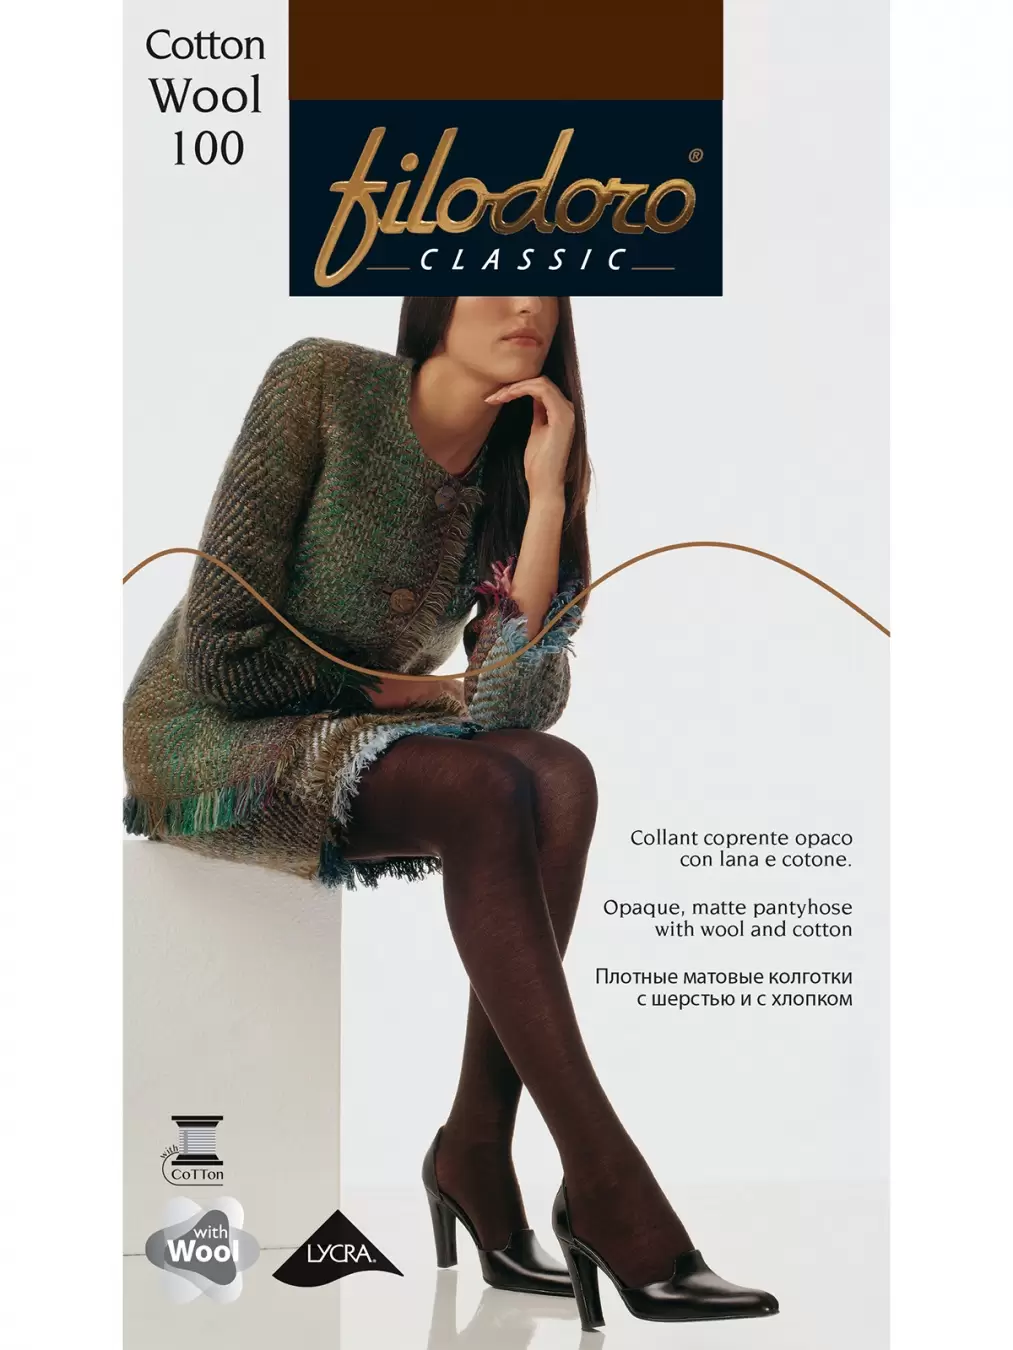 Filodoro Cotton Wool 100, колготки купить недорого в интернет-магазине  Nosok.ru Москва